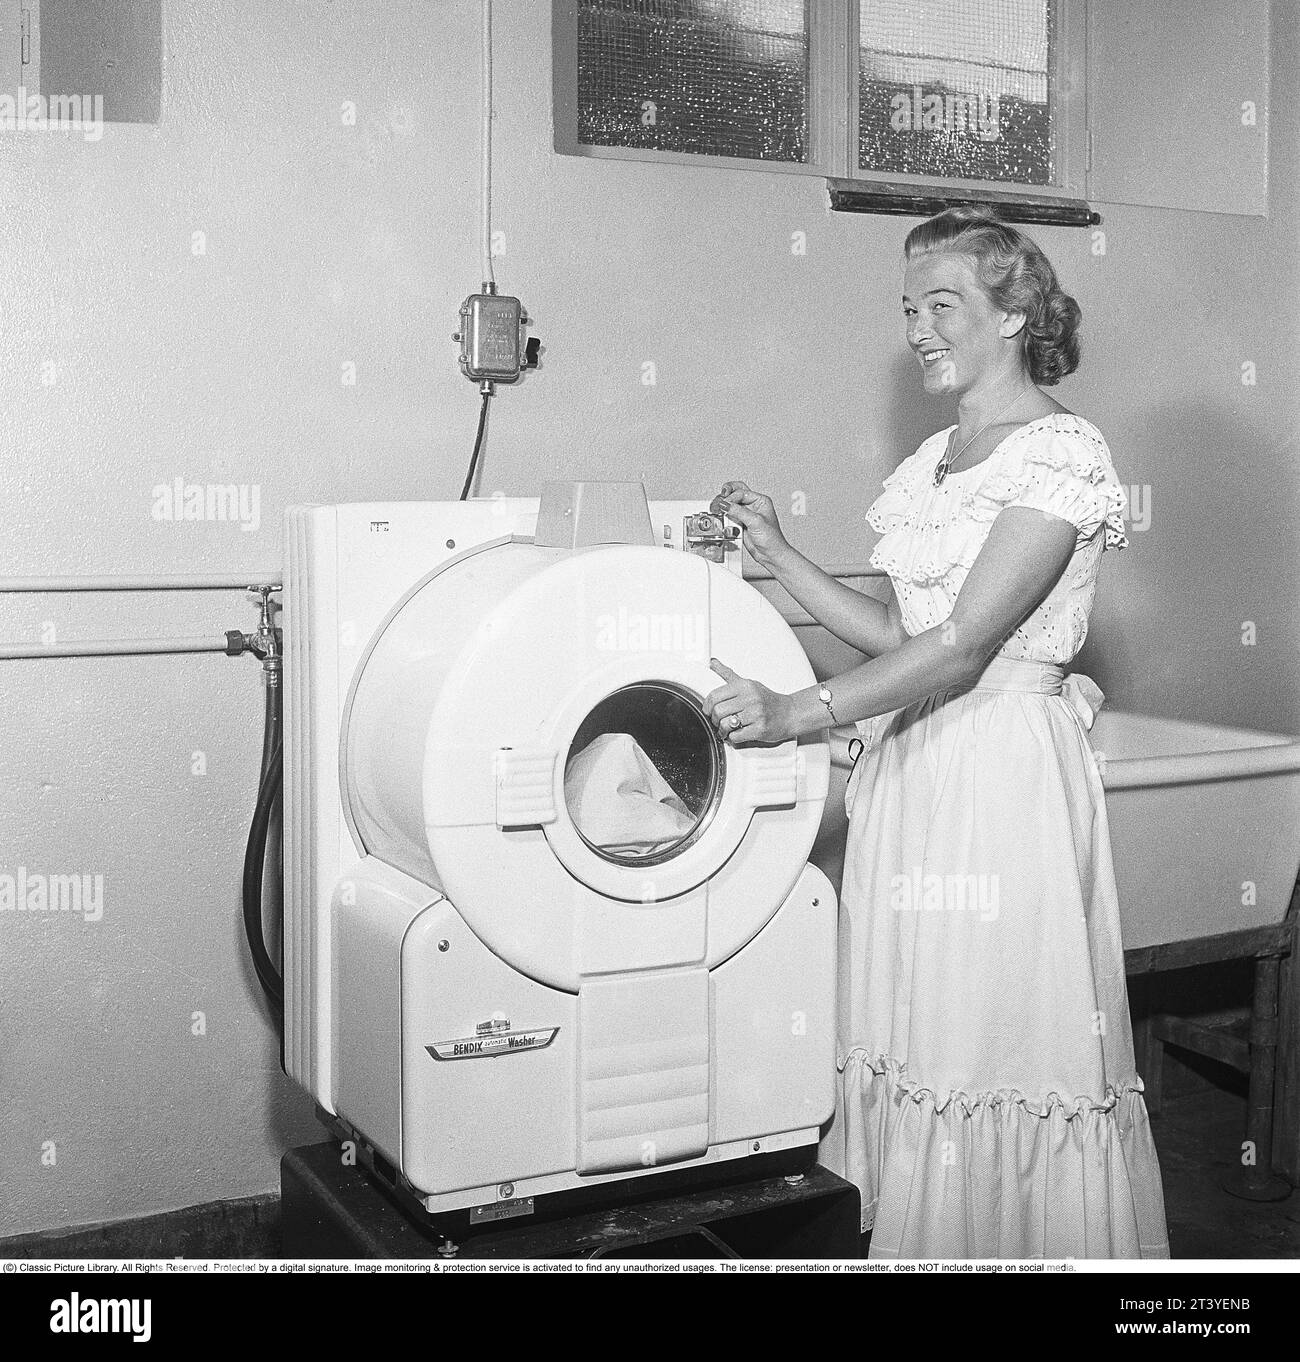 In den 1950er Jahren Eine junge Frau an einer modernen amerikanischen Waschmaschine des Herstellers Bendix. Das Modell war die erste automatische Waschmaschine und ähnelte nicht den heutigen Waschmaschinen. Schweden 1950. Kristoffersson Ref. AZ78-7 Stockfoto